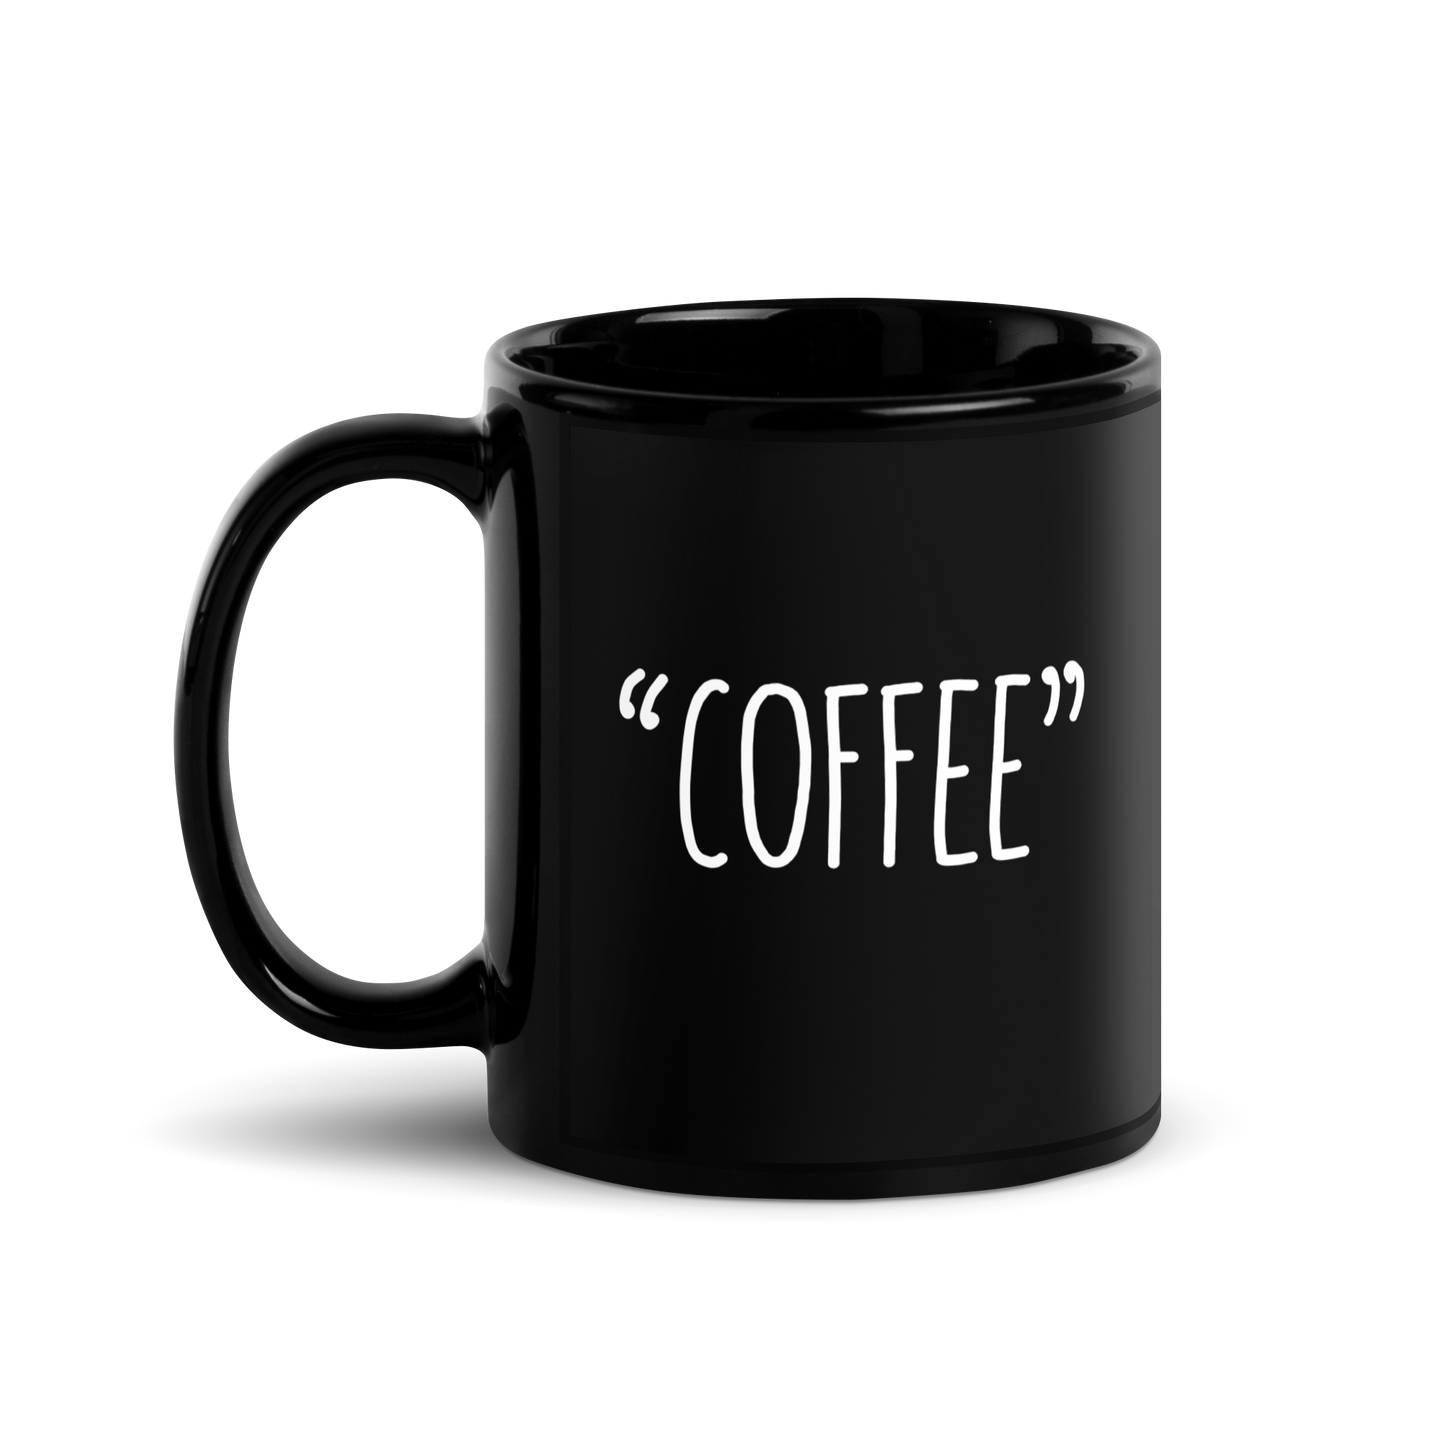 "COFFEE" - Funny Mug